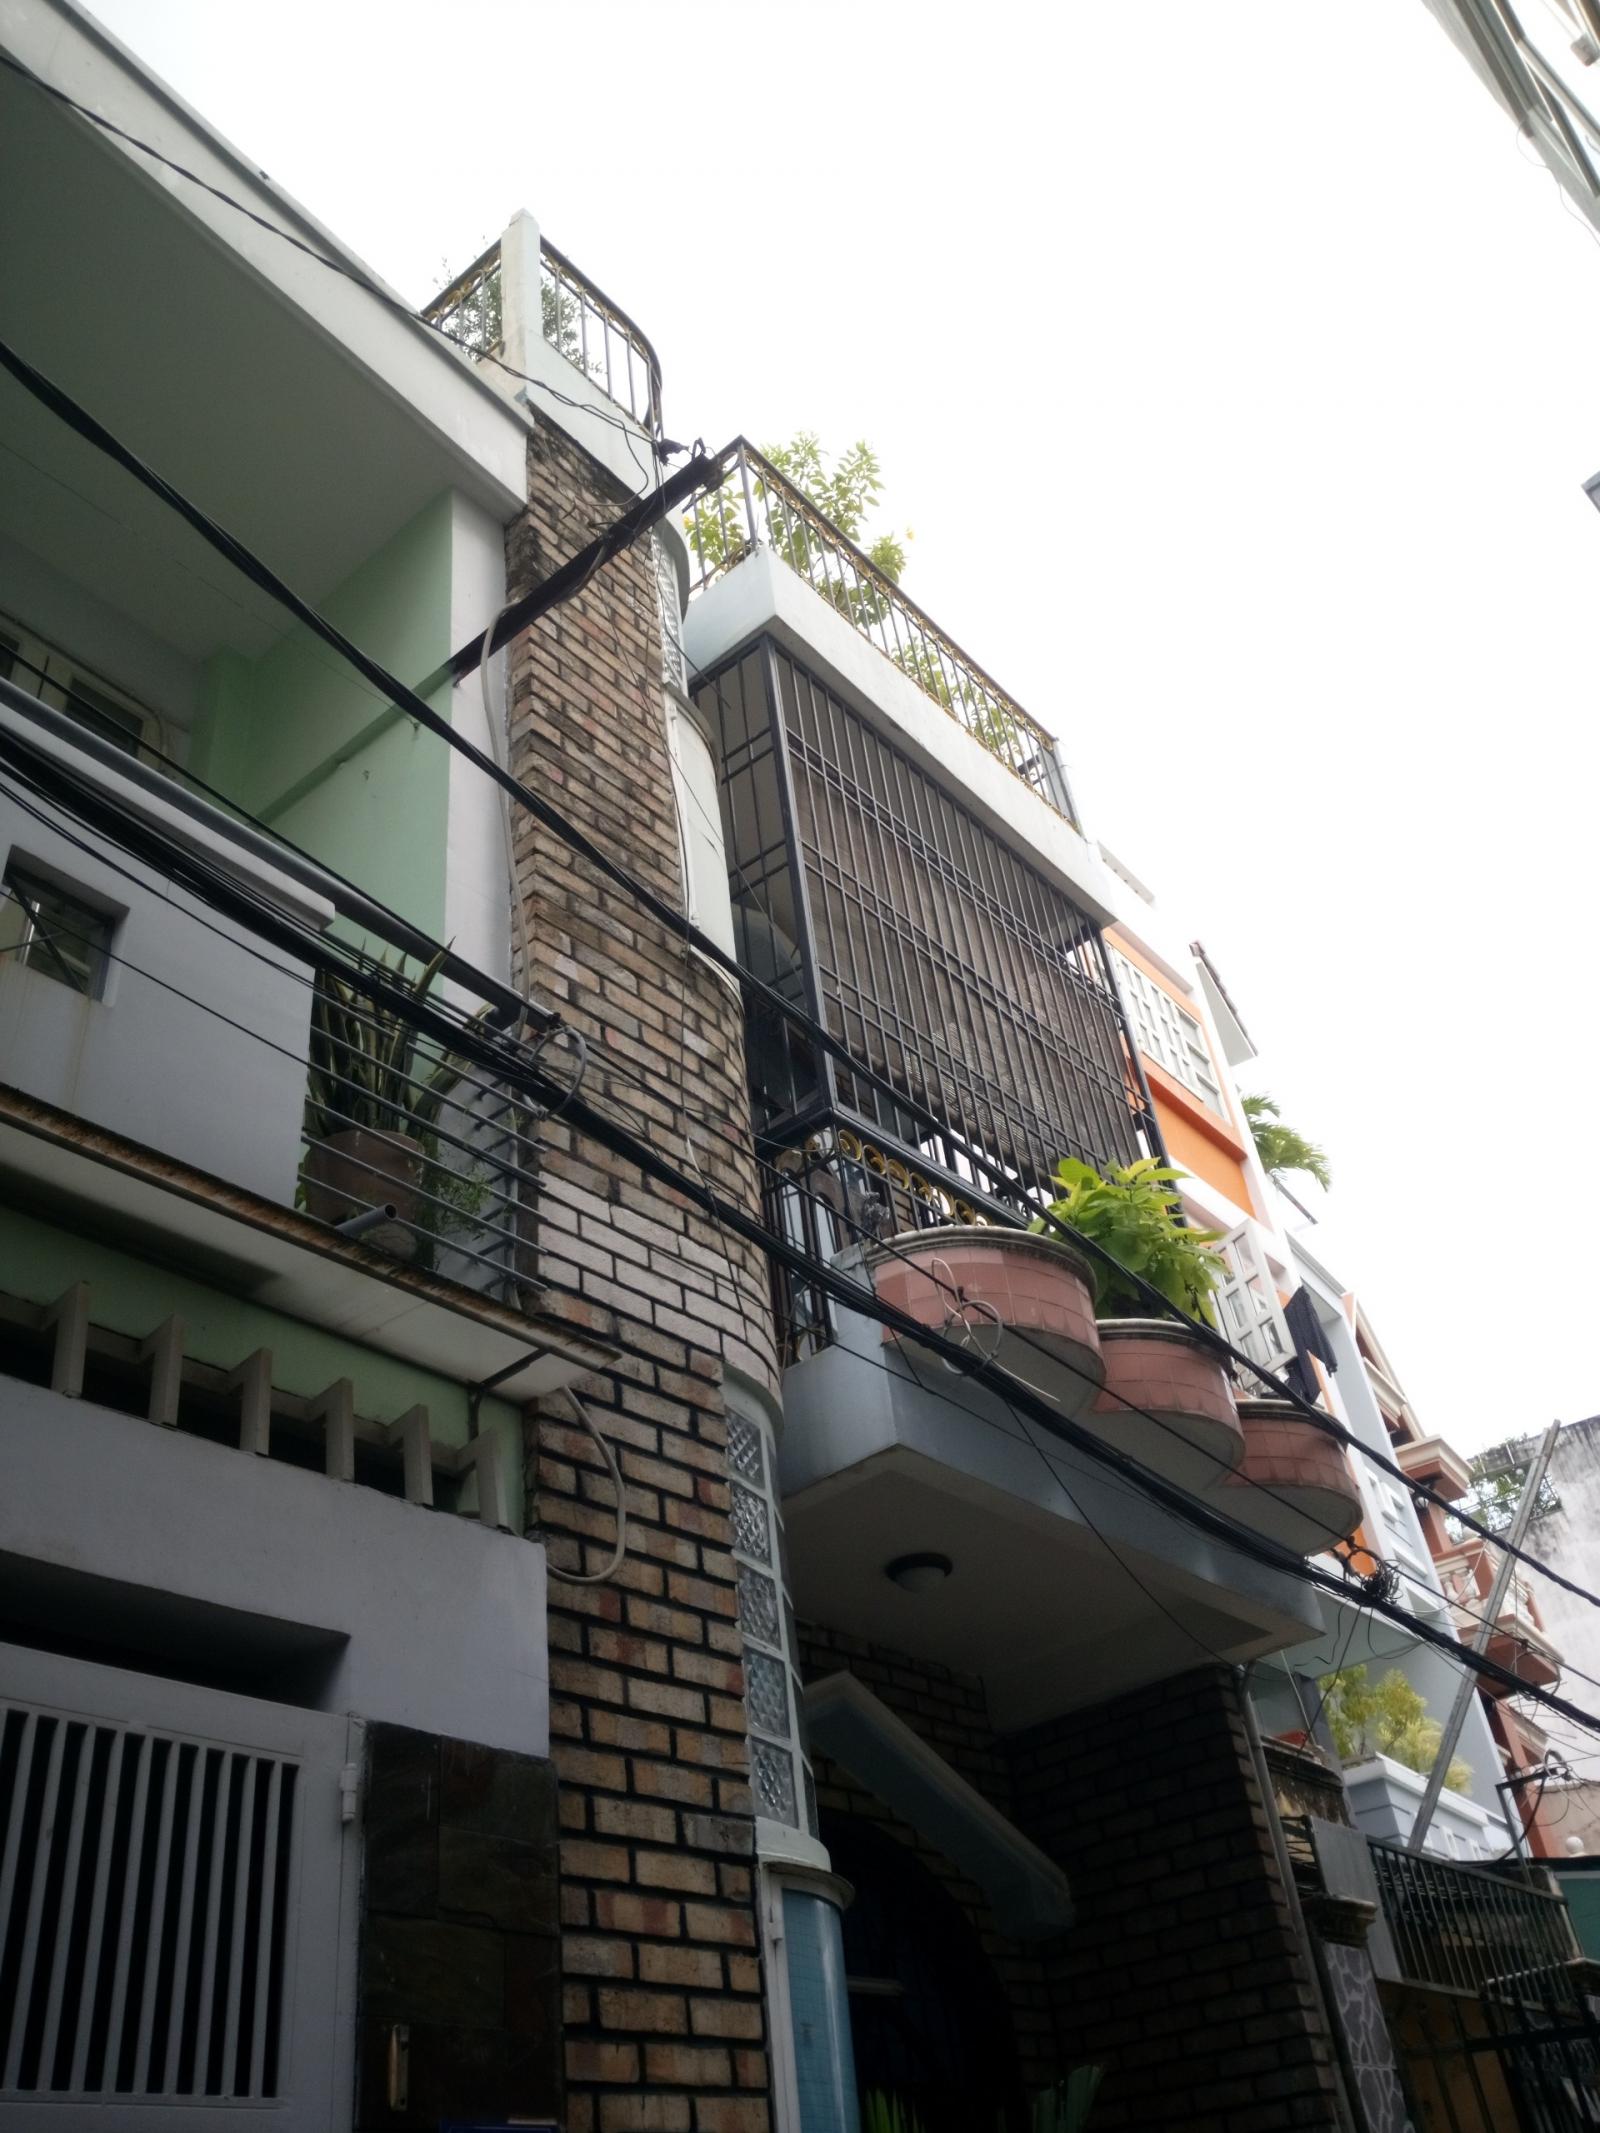 Bán nhà 2 lầu mới đẹp Nguyễn Thái Sơn Phường 3 Gò Vấp 5.2x20m giá chỉ 8.3 tỷ Liên hệ 0988 50 48 48 Anh Cầm